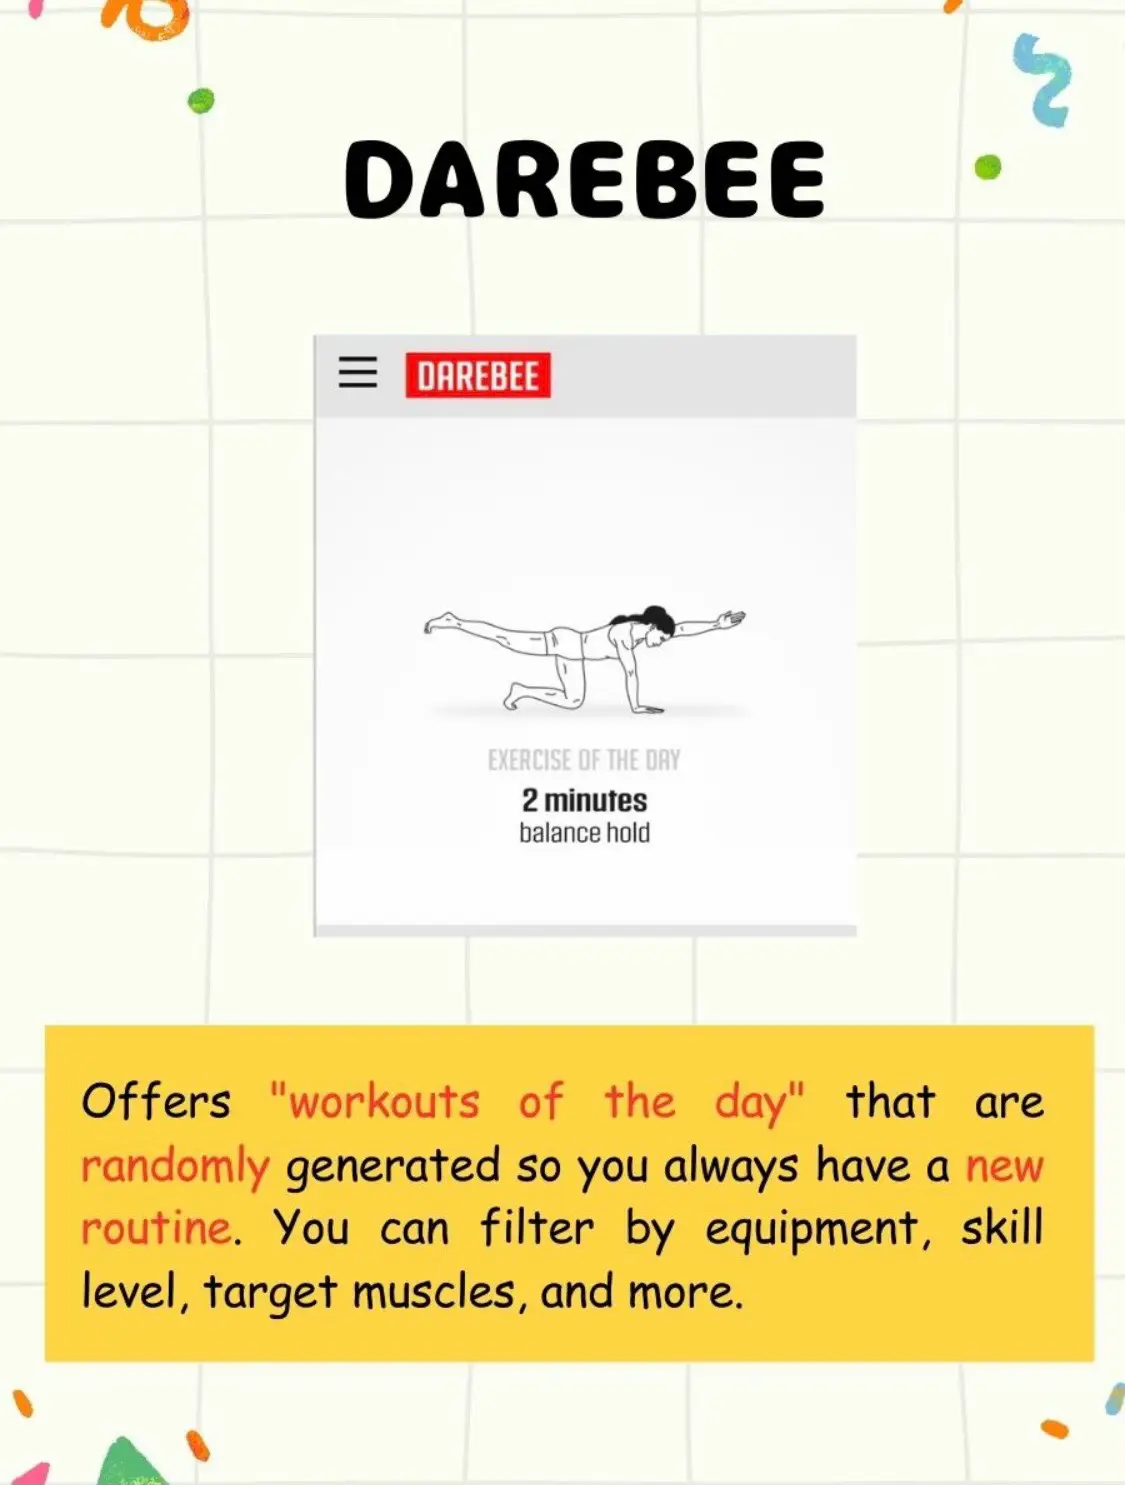 DAREBEE on X: 1 Minute Yoga Challenge by DAREBEE  # darebee #challenge #fitness  / X